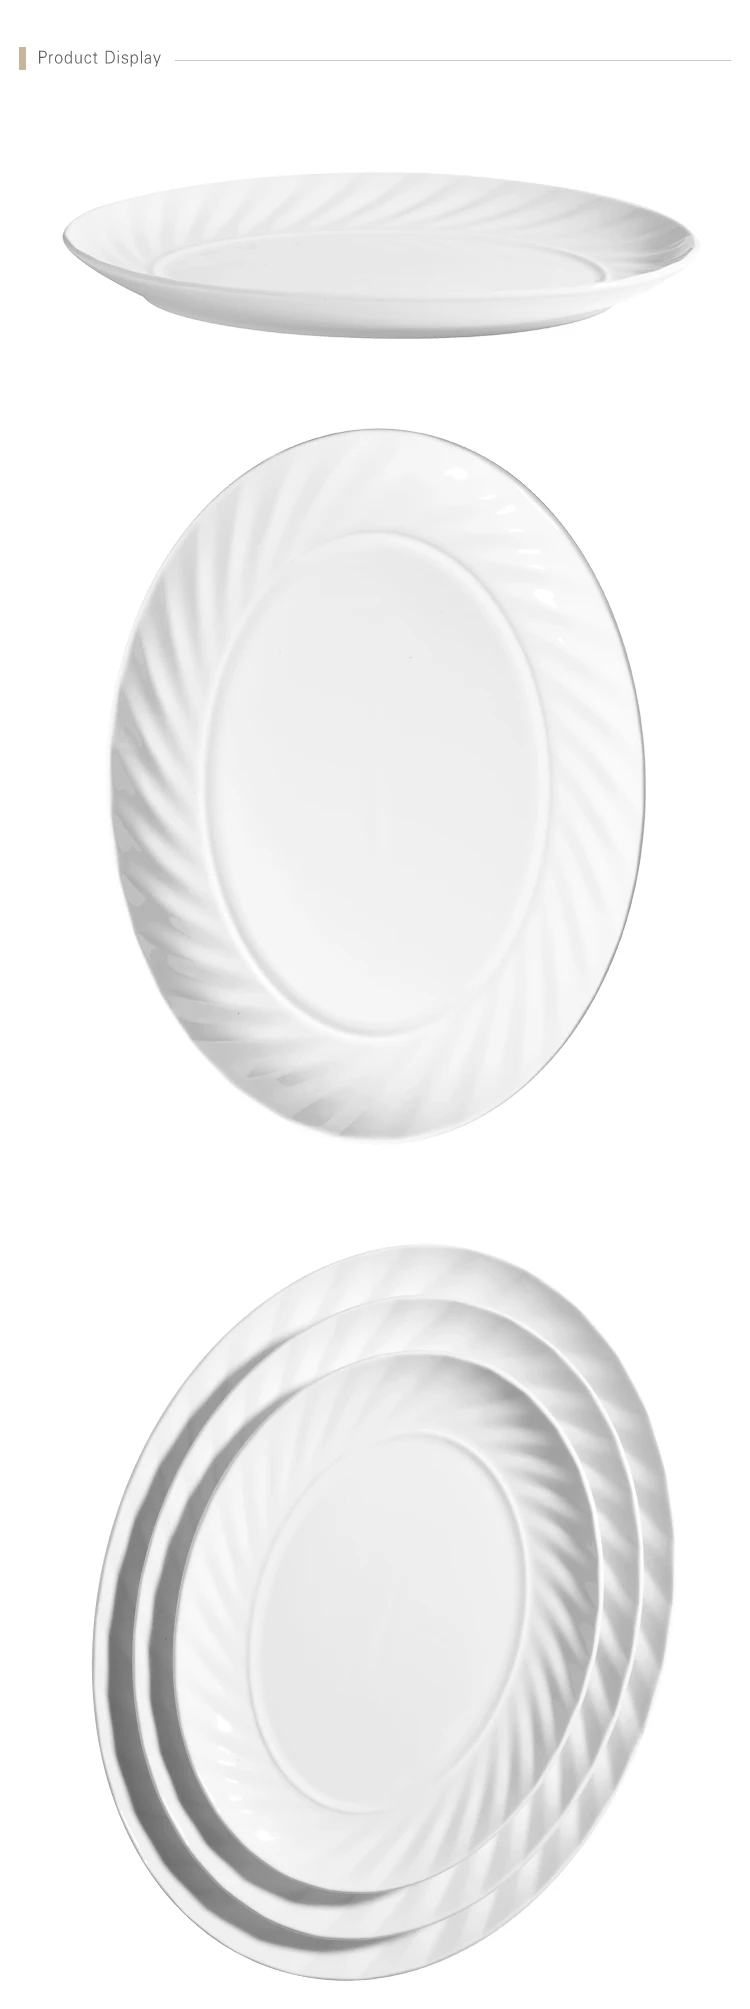 UAE Supplier 12" Elegant White Oval Plate Restaurant Dinner Set